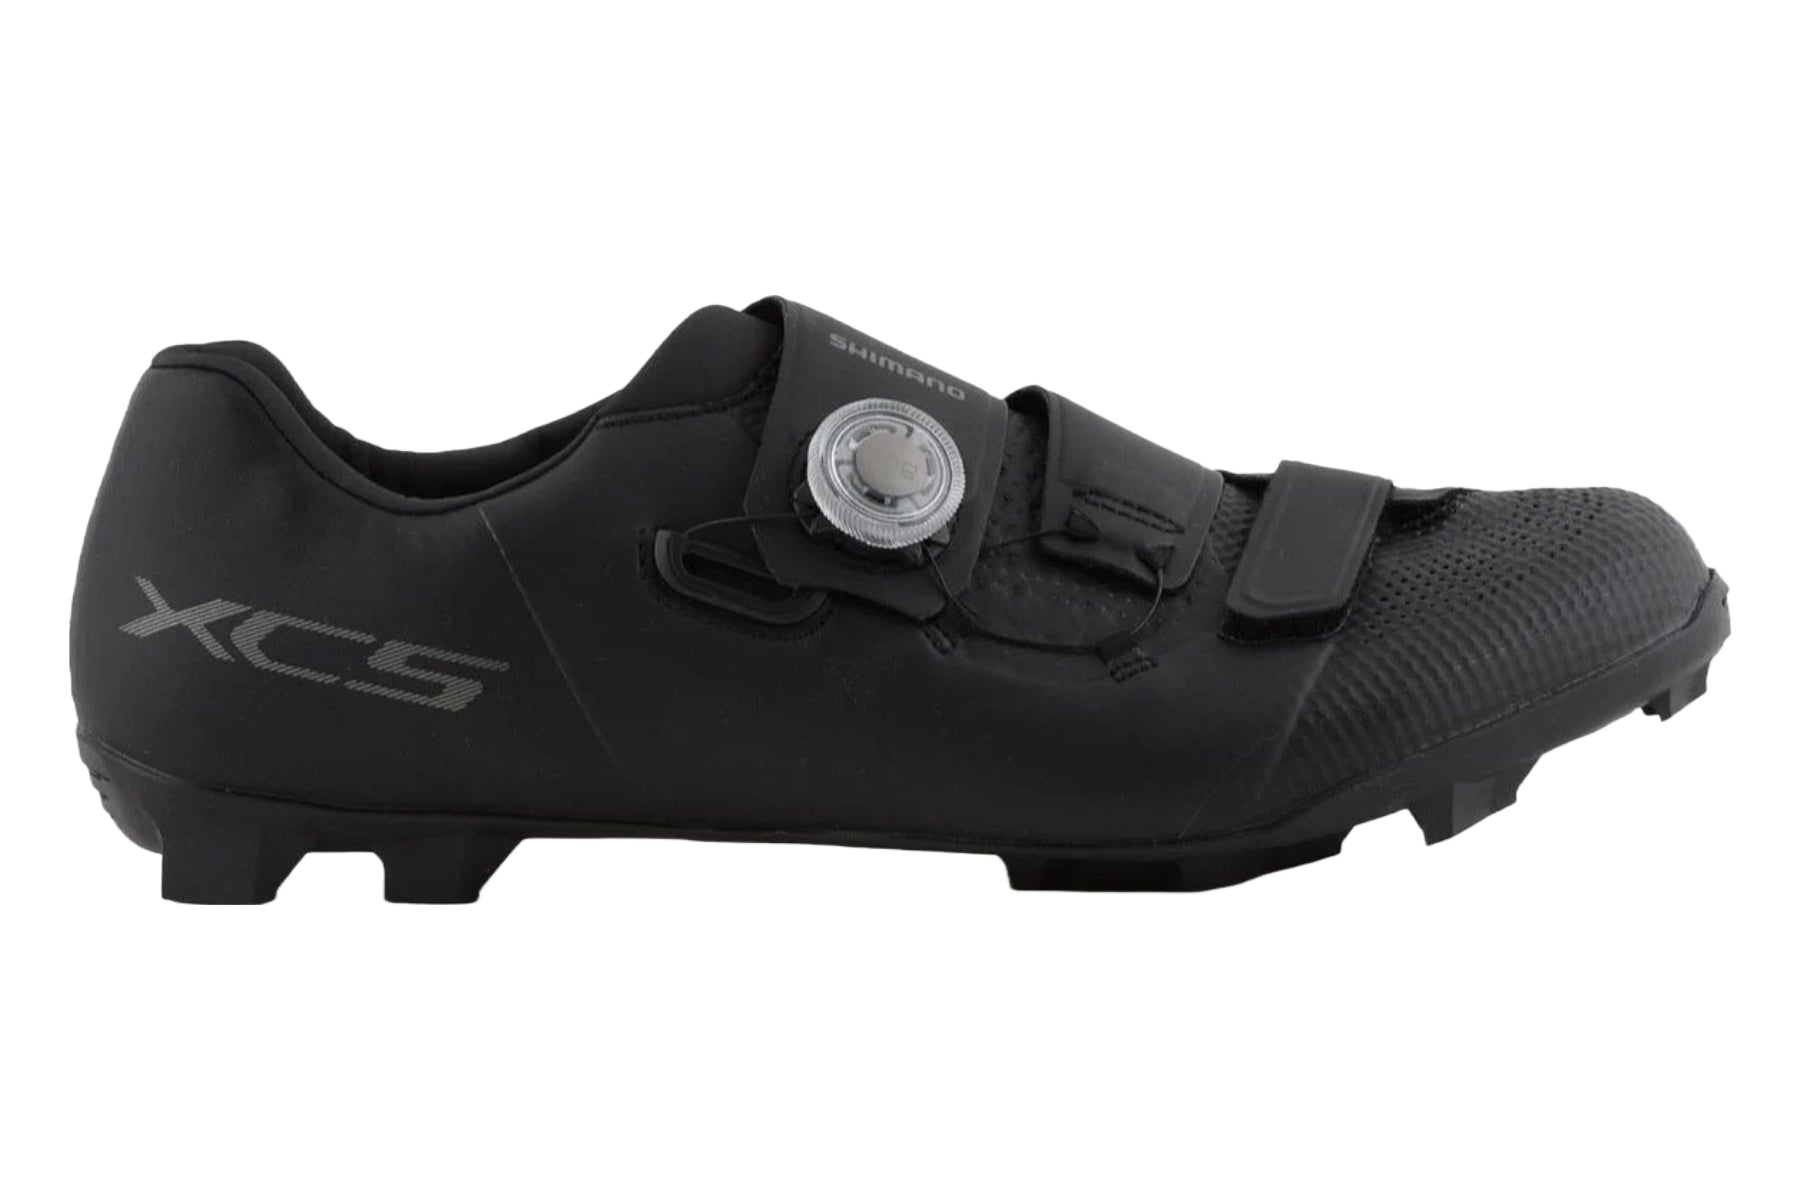 Photos - Cycling Shoes Shimano XC5 Mountain Shoes - Black - 45 ESHXC502MCL01S45000 